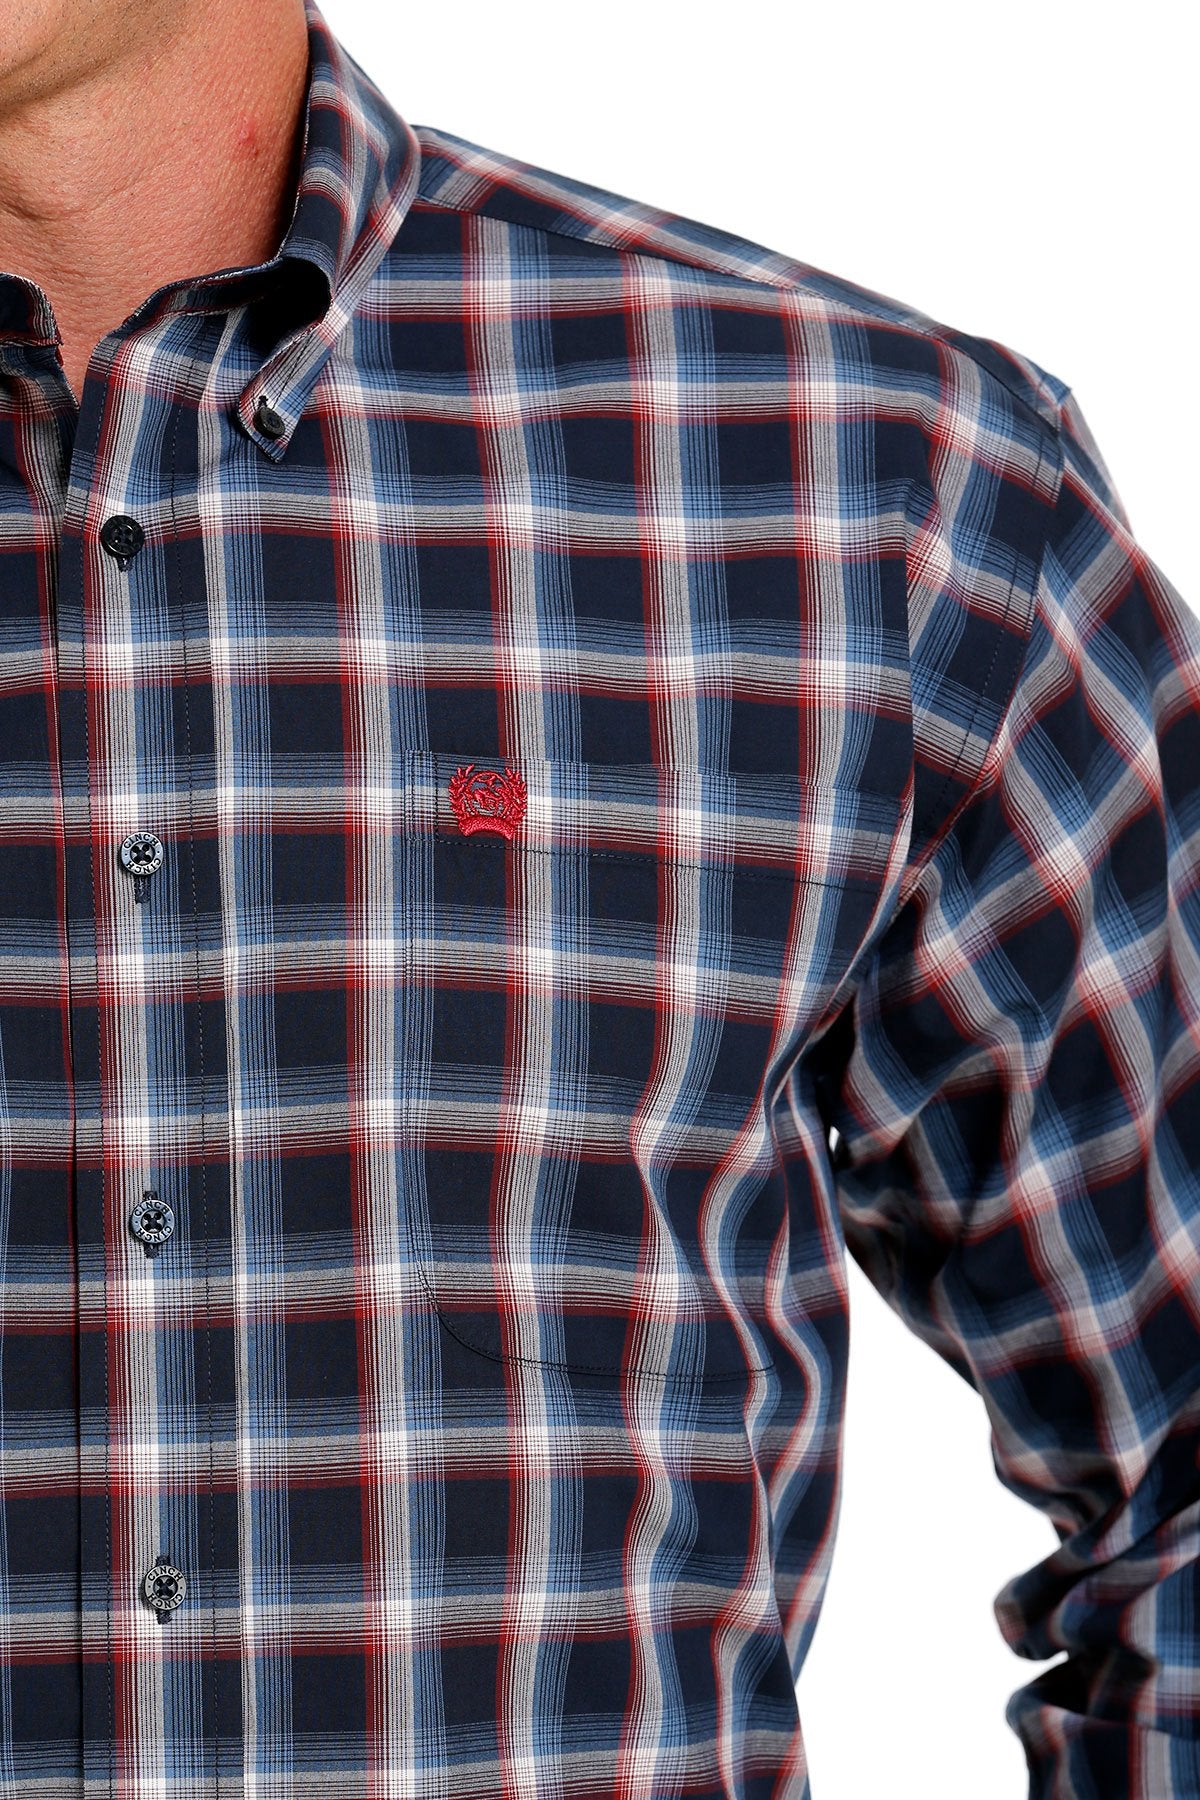 Cinch Men's Plaid Button-down Western Shirt in Navy/Red/Cream